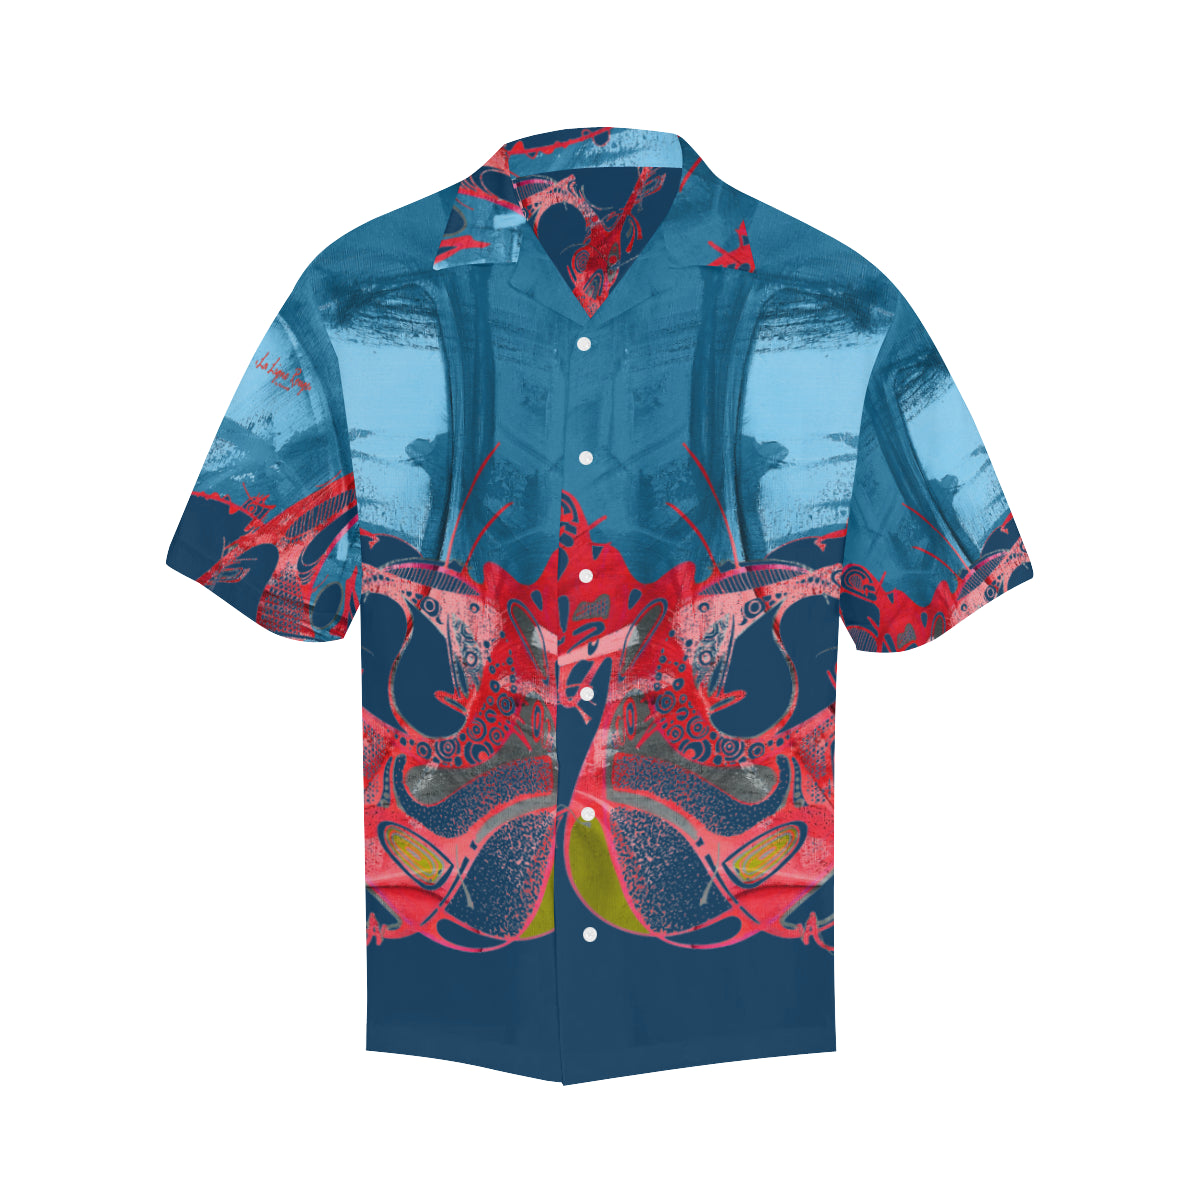 Hawaiian shirt "Sursoijean"